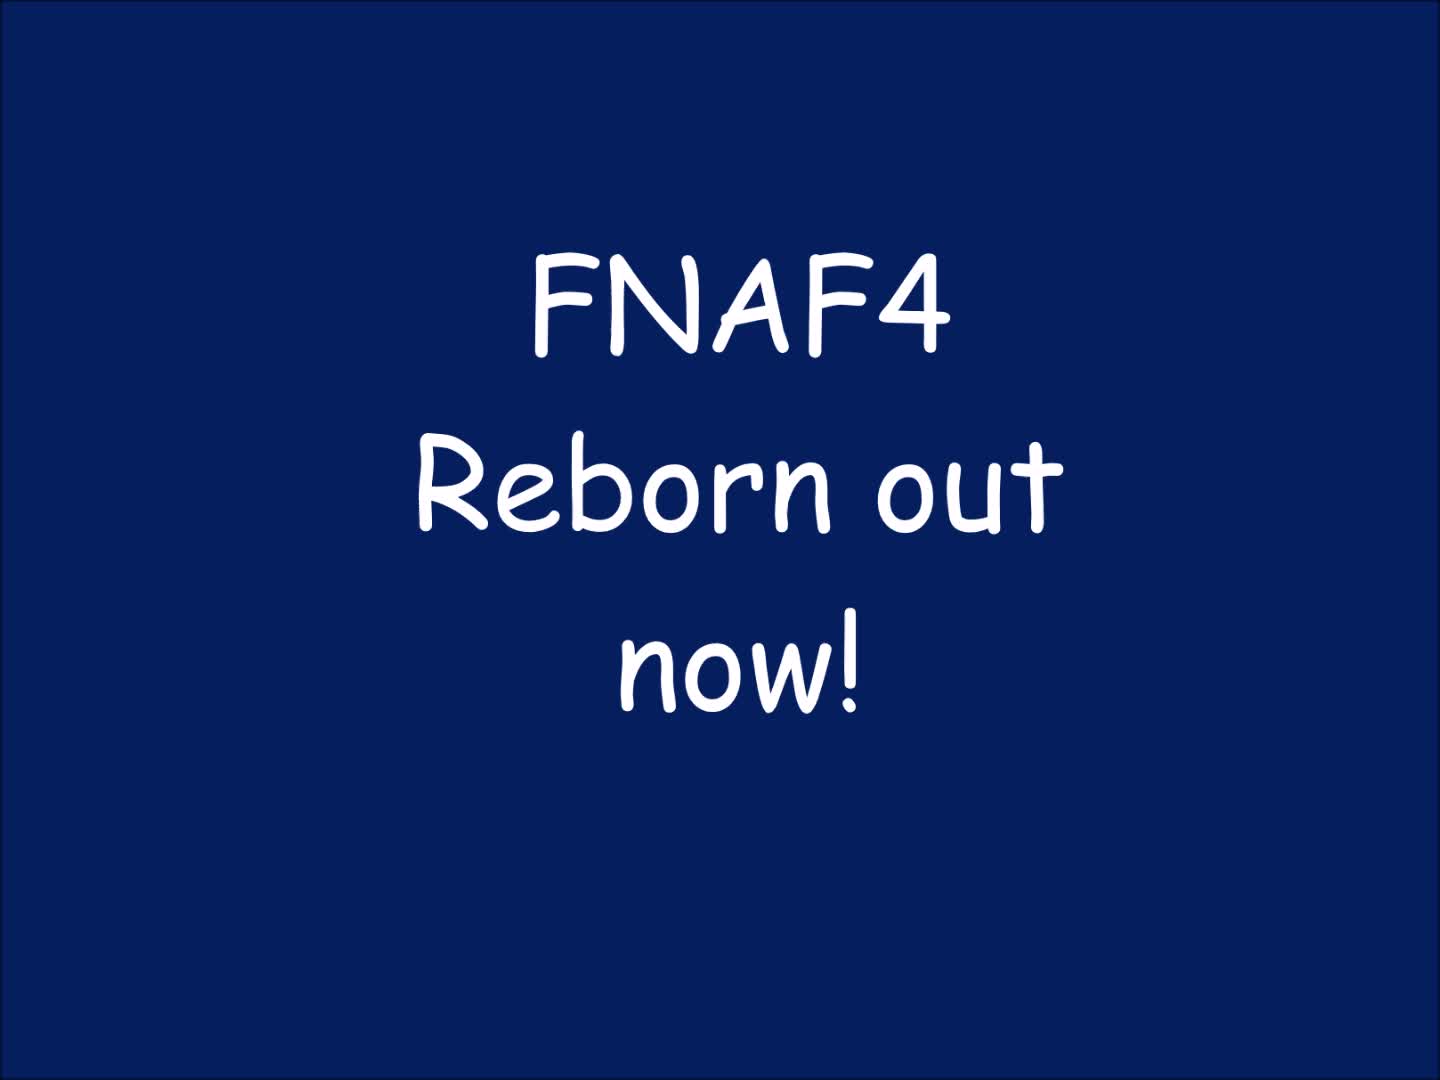 FNAF 4 REBORN OUT NOW! (Game link in description)